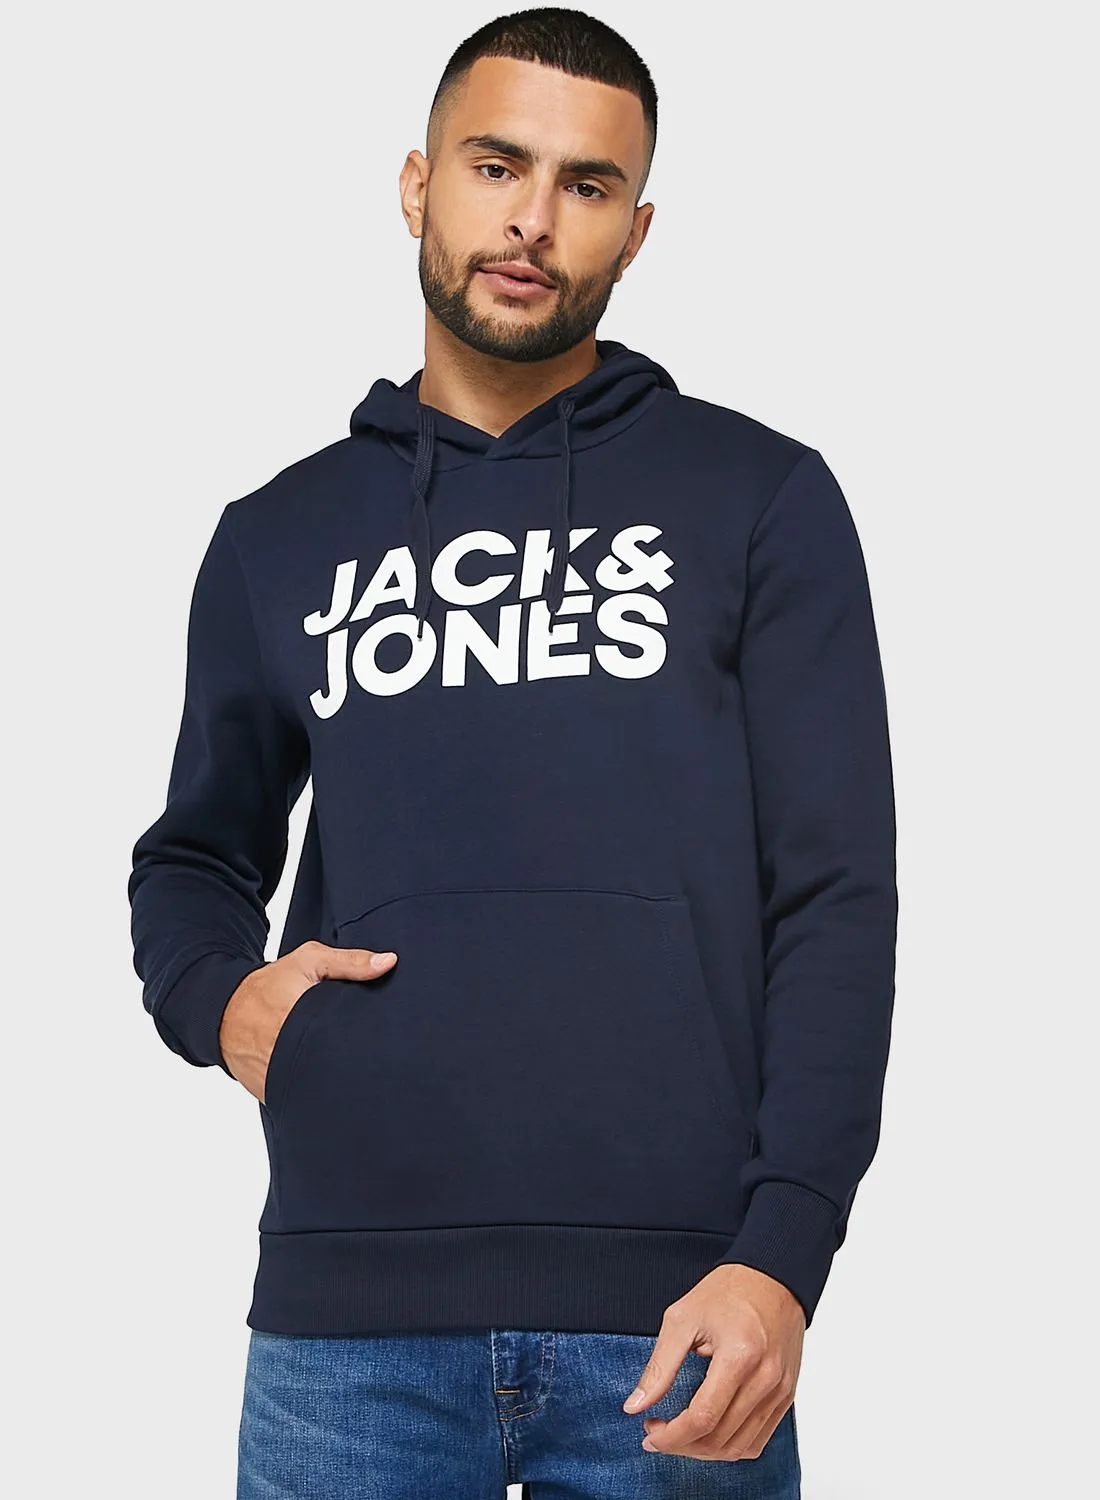 JACK & JONES Logo Printed Hoodie